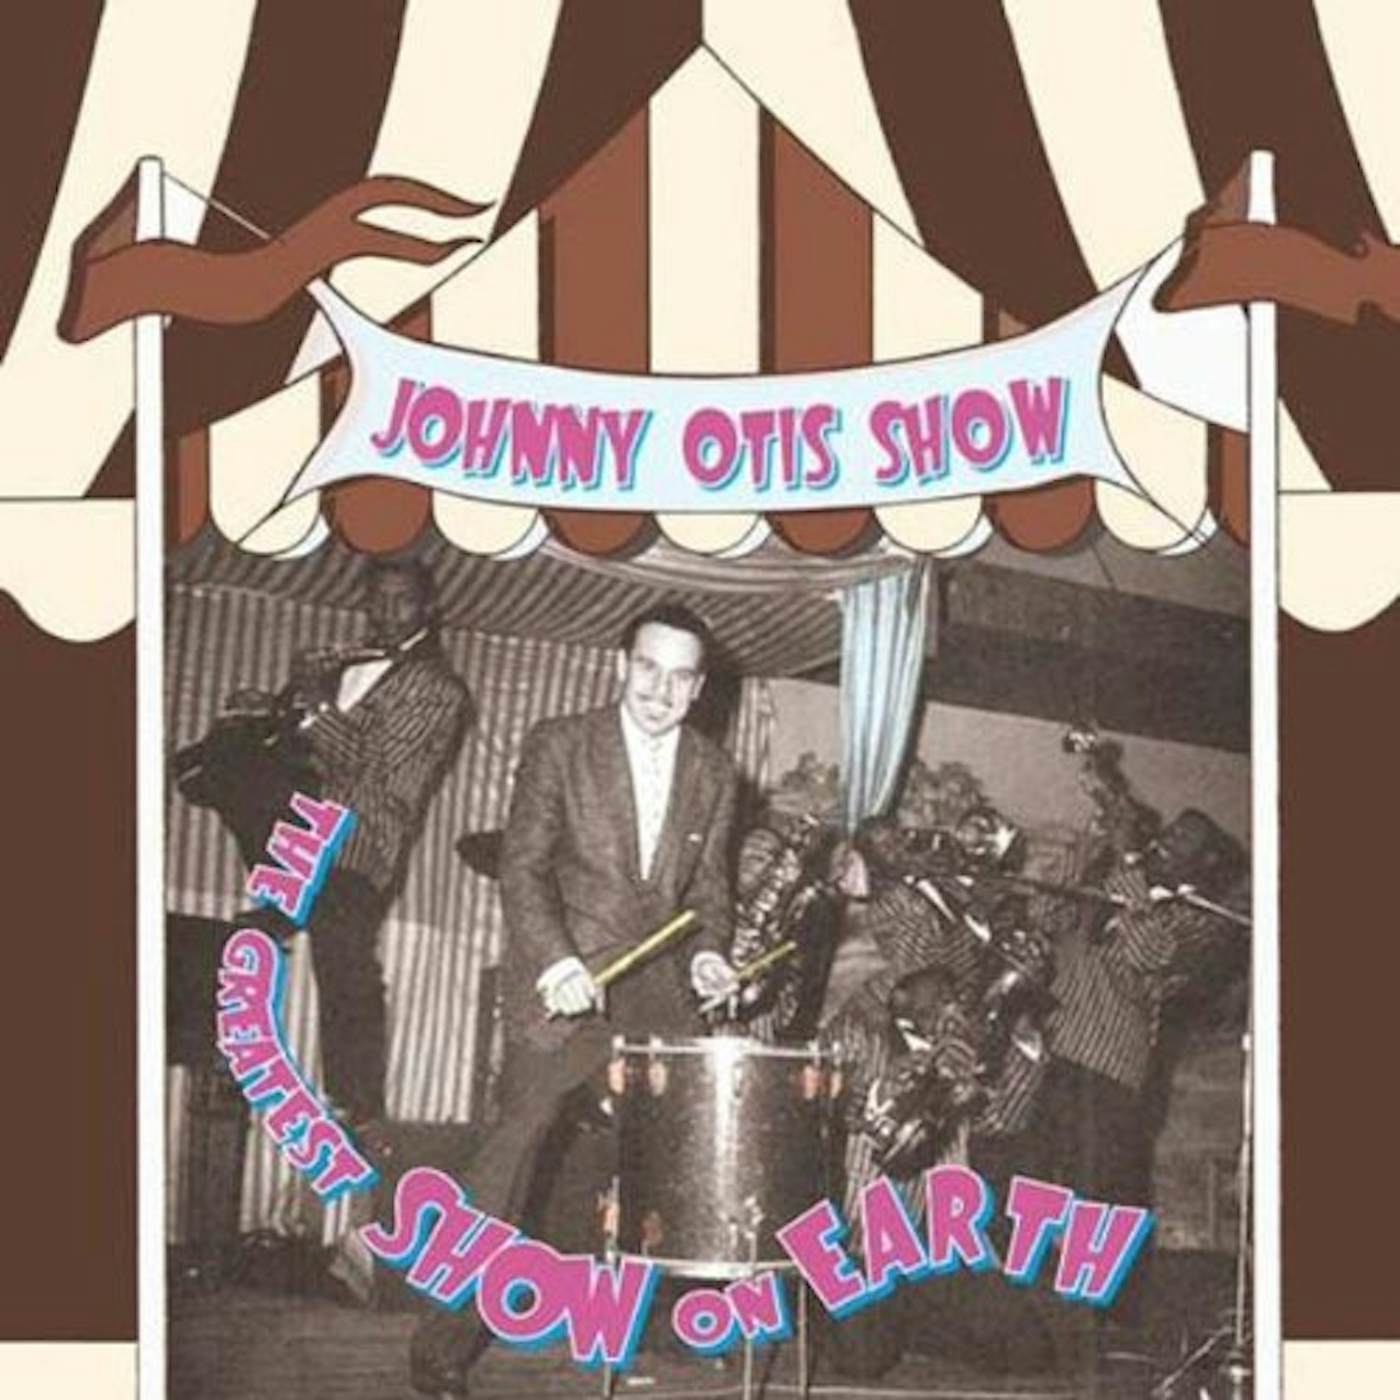 Johnny Otis GREATEST SHOW ON EARTH (OGV) (Vinyl)